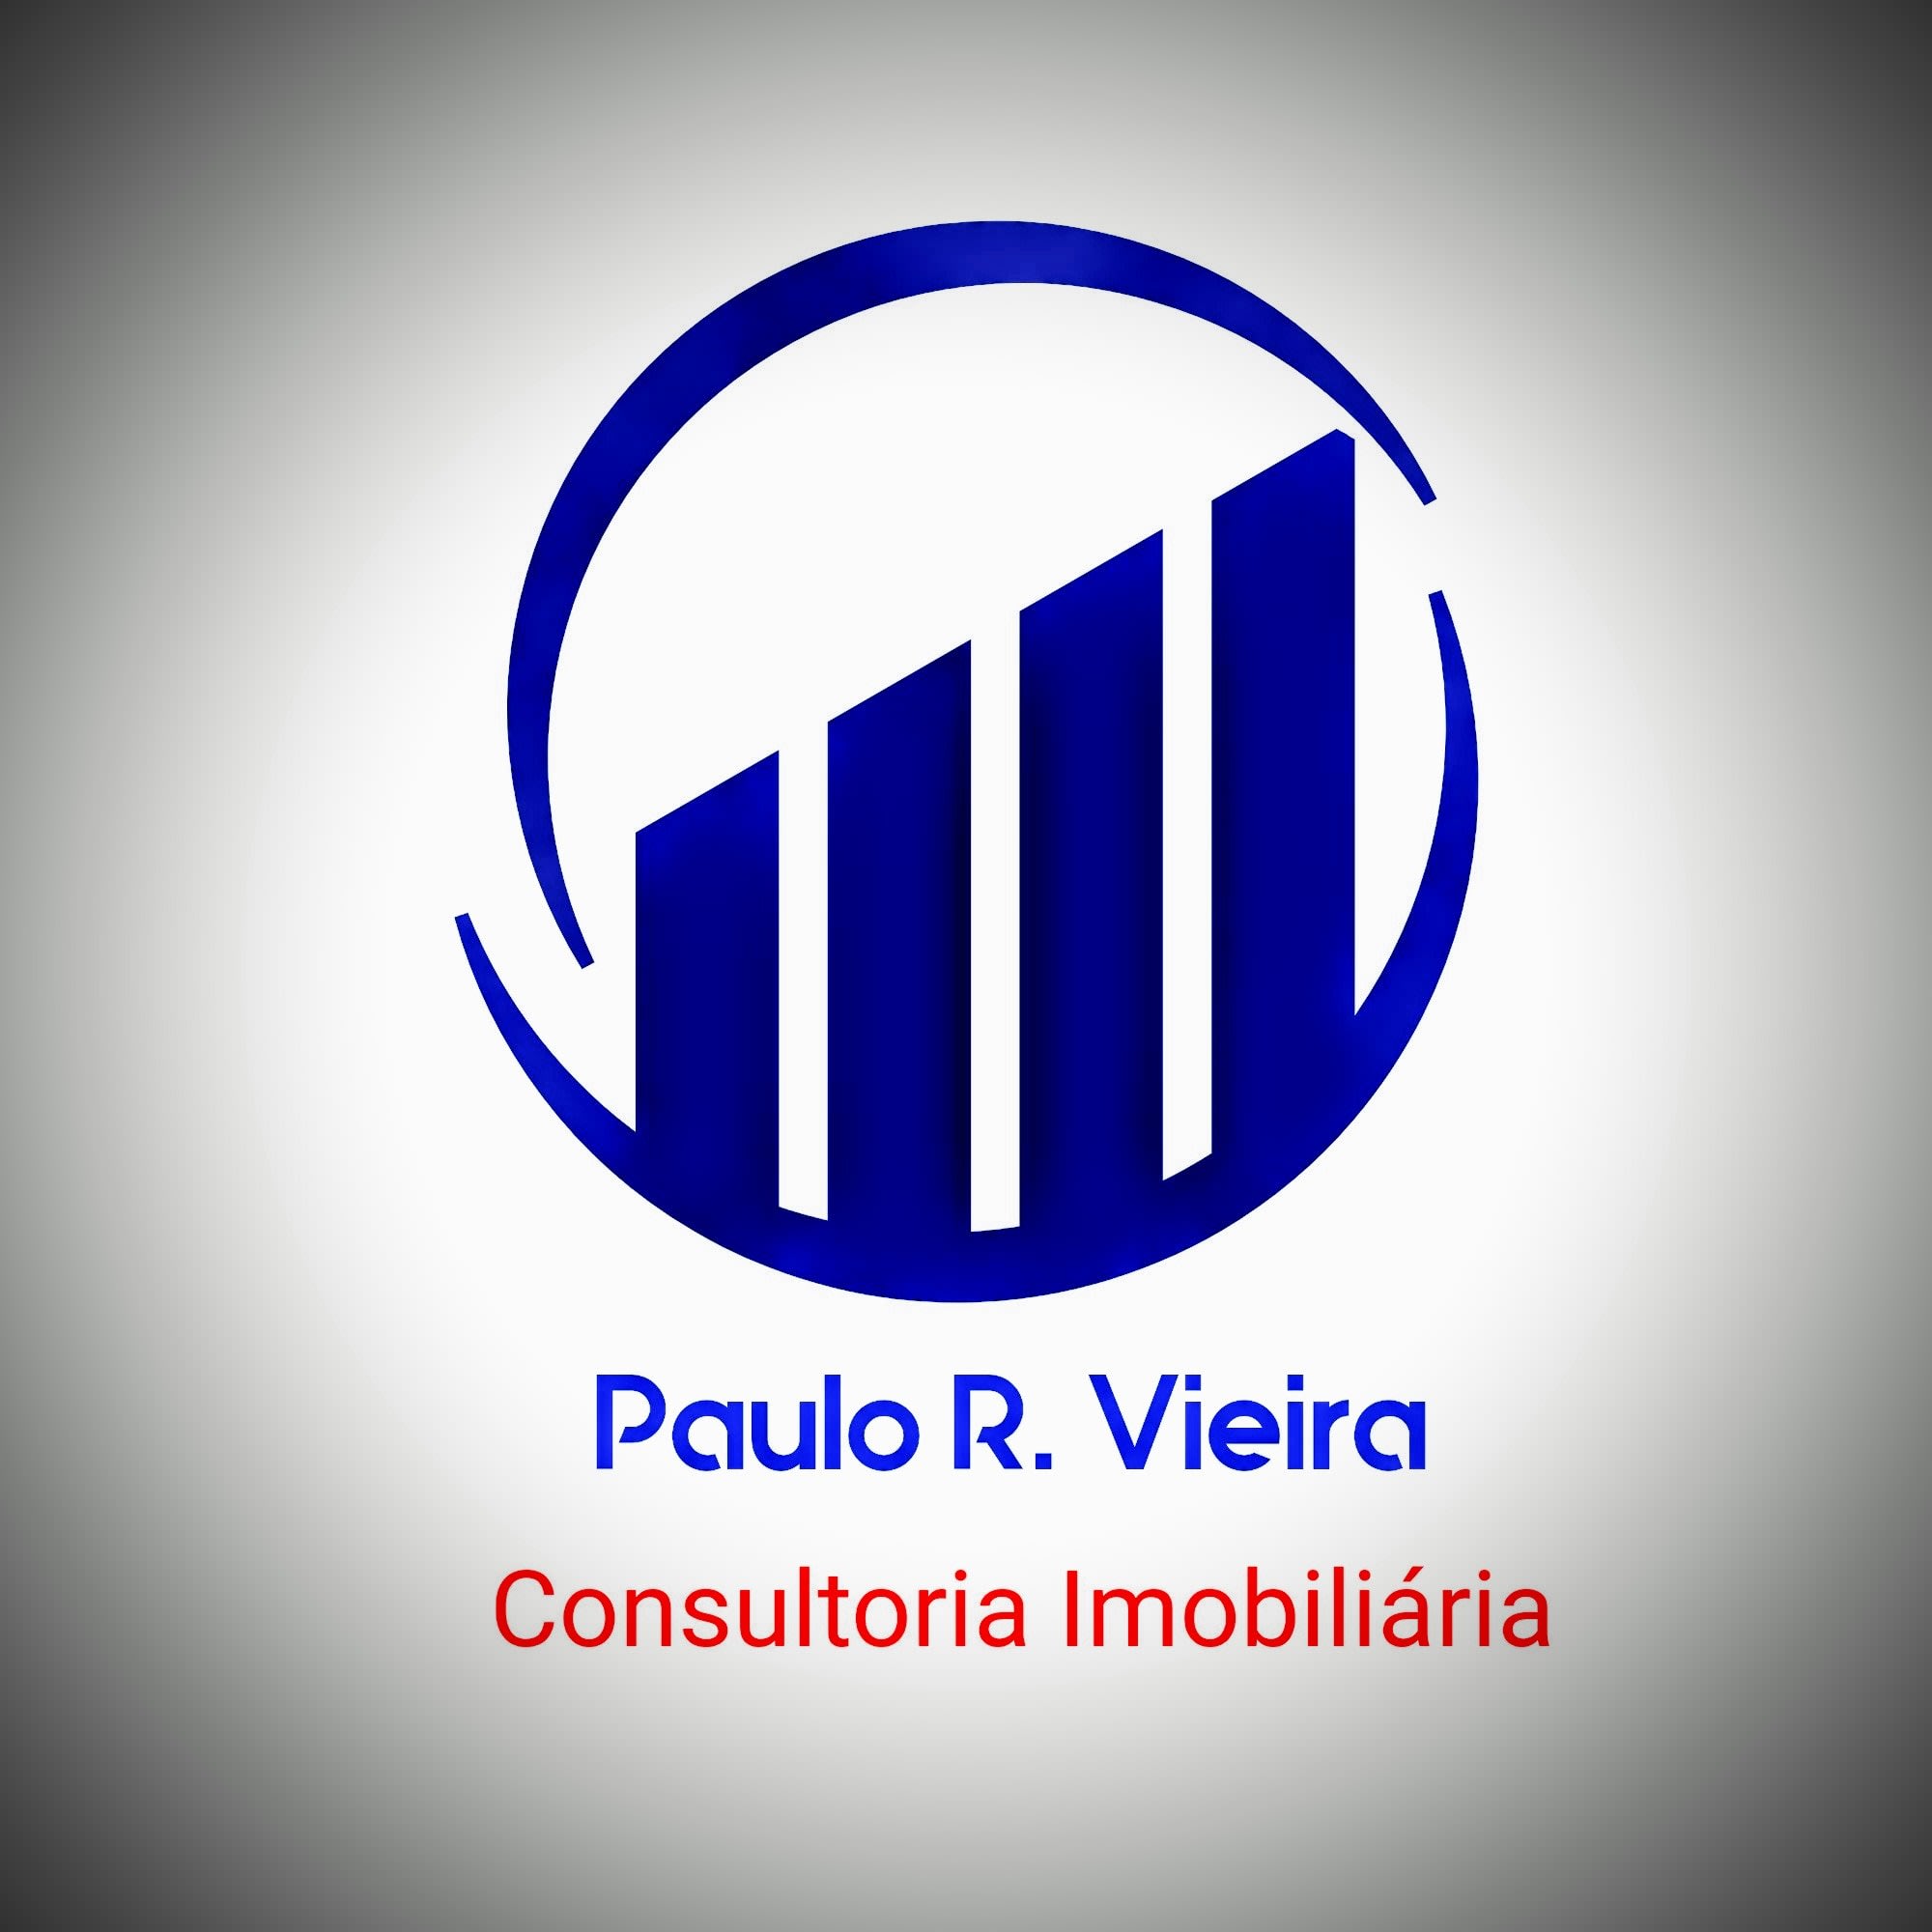 Paulo R. Vieira Consultoria Imobiliária